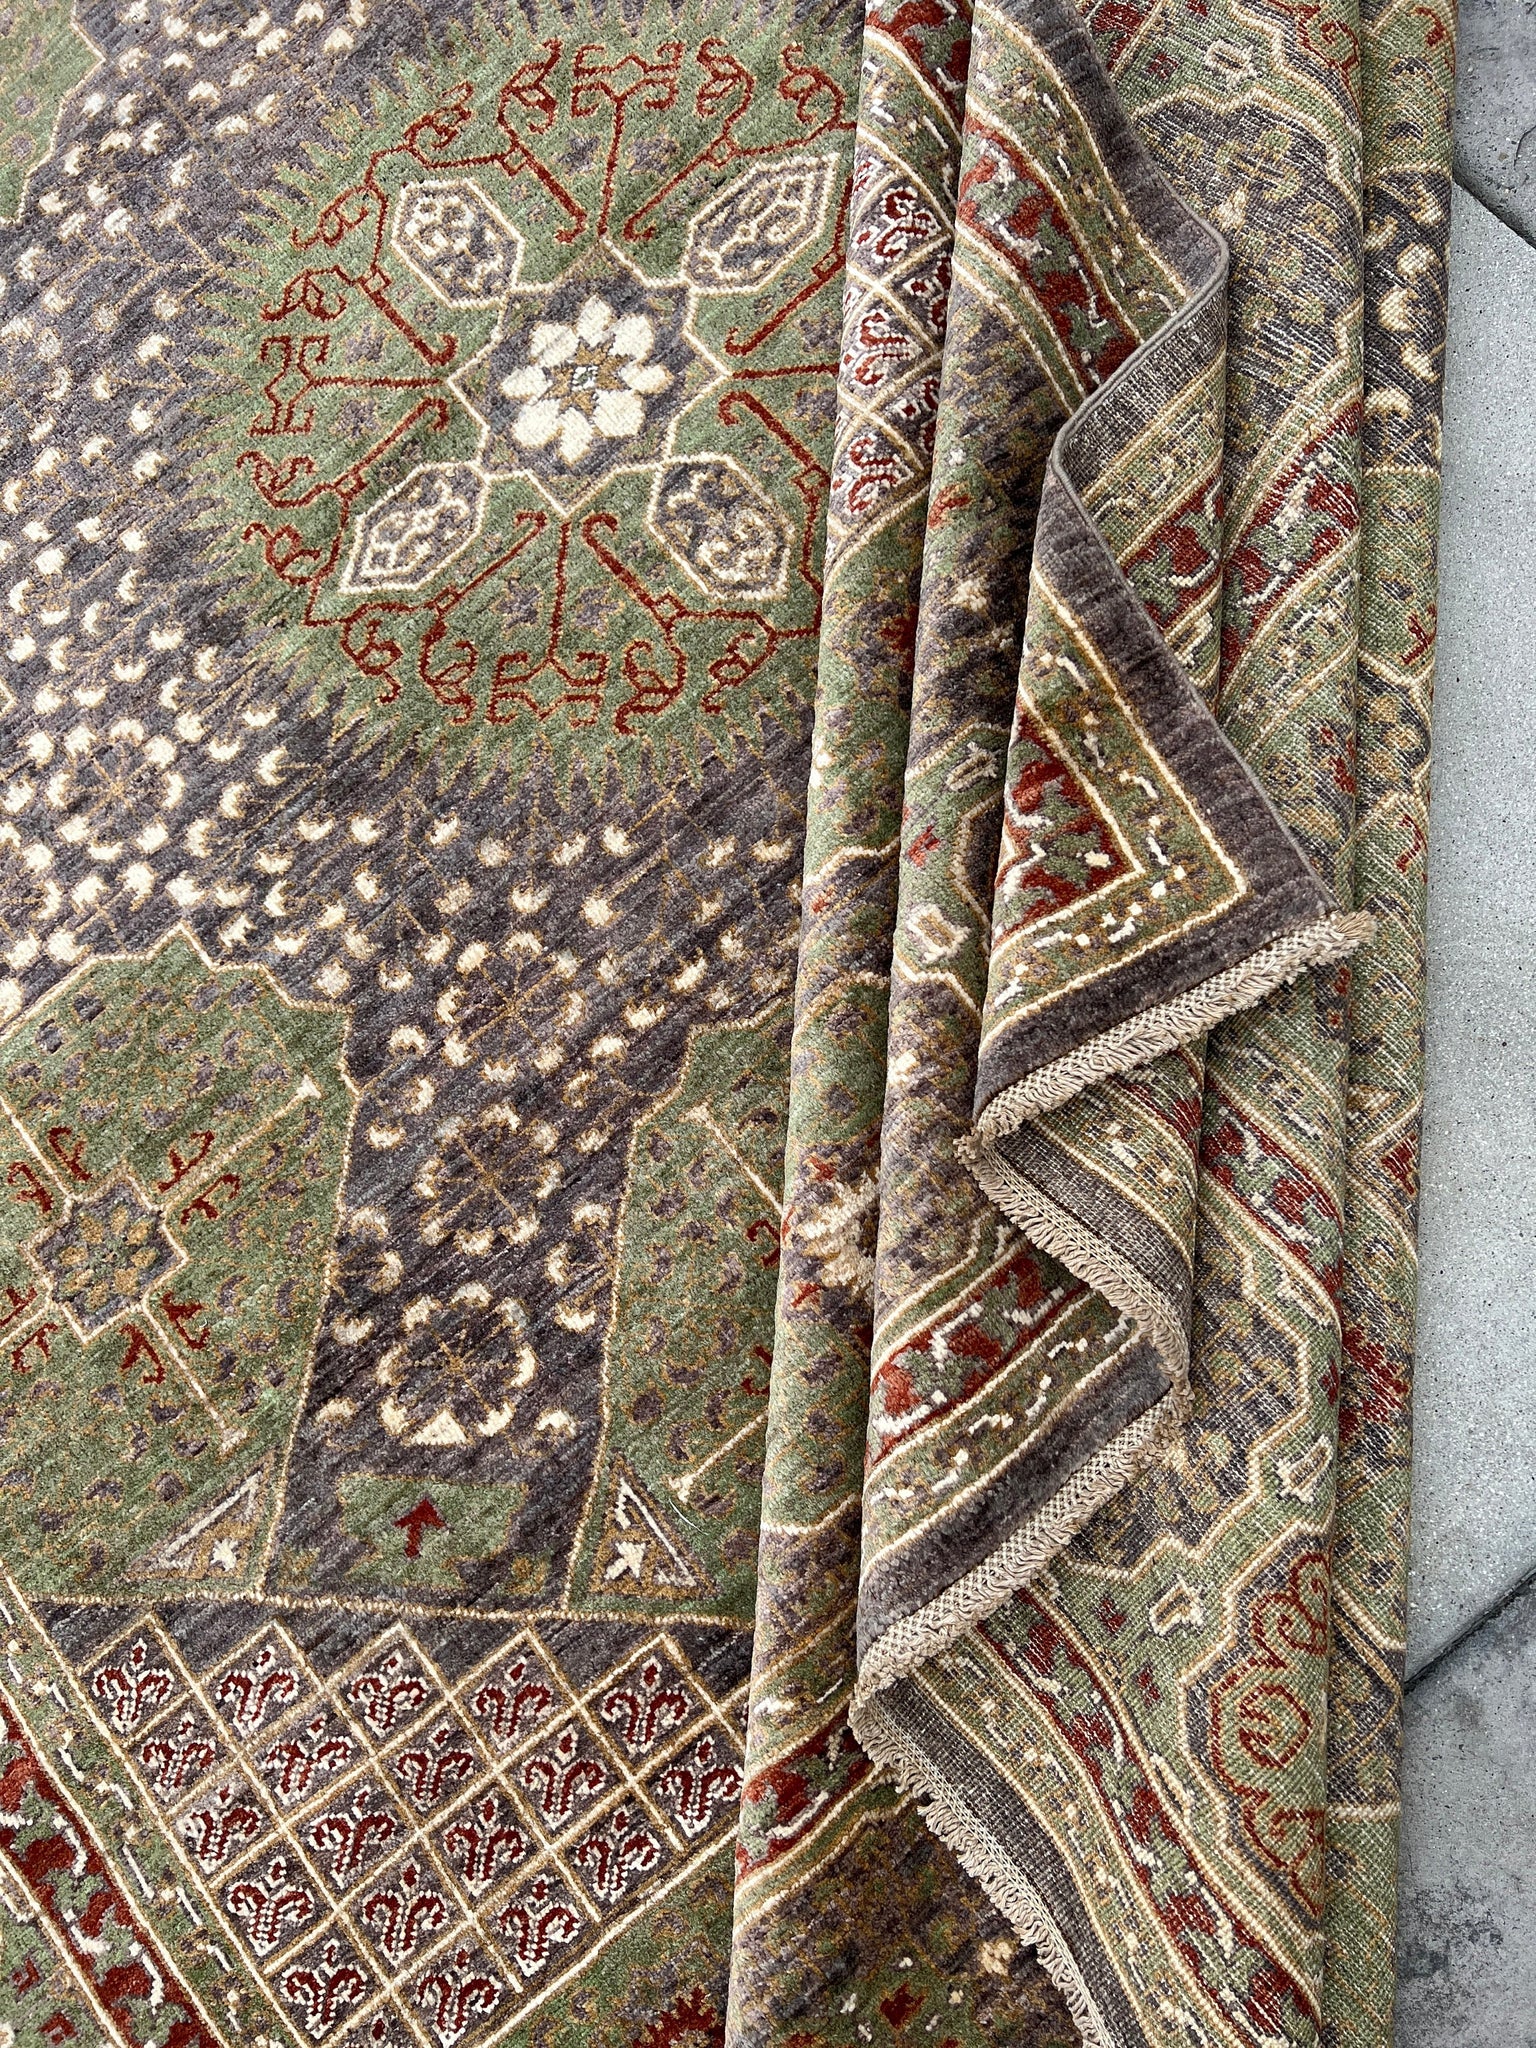 9x12 (270x365) Handmade Afghan Rug | Charcoal Grey Moss Green Brick Rust Red Ivory | Bokhara Turkmen Turkoman Ersari Oriental Turkish Wool